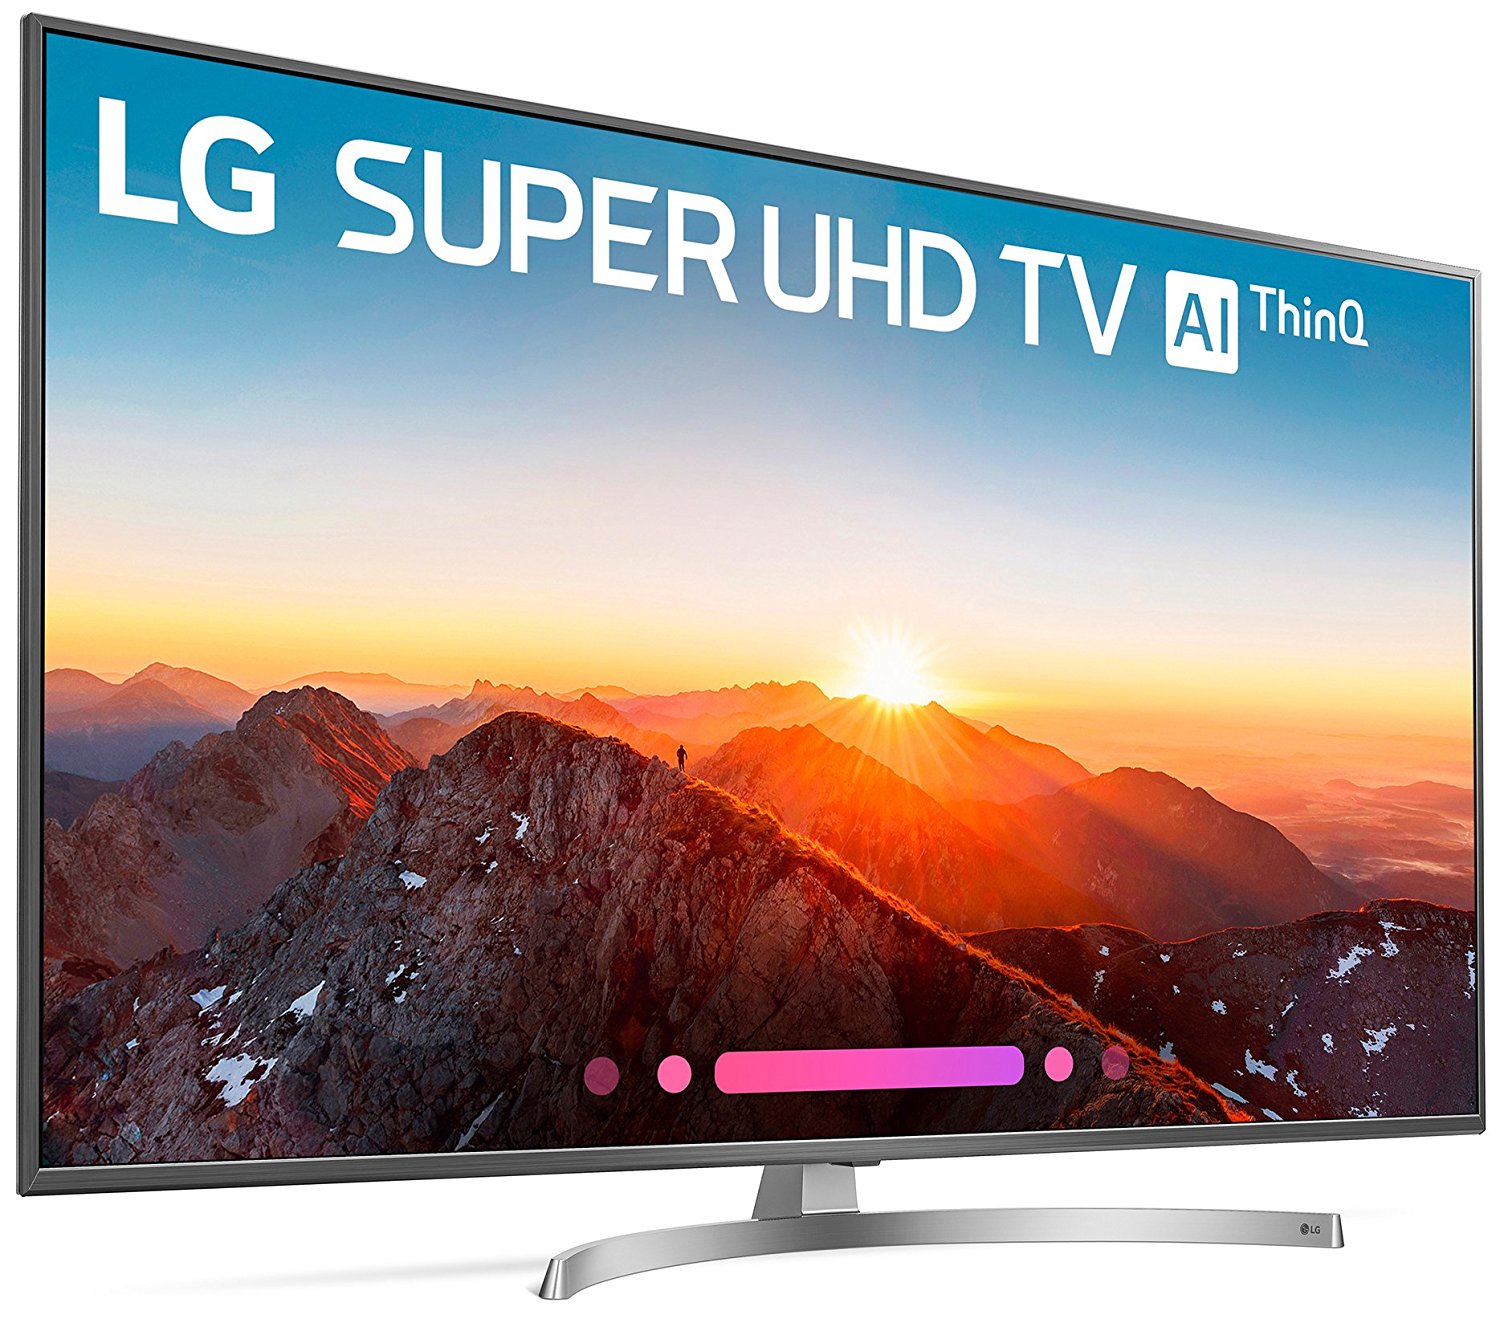 Lg Electronics 55sk8000pua 55 Inch 4k Ultra Hd Smart Led Tv 2018 Model